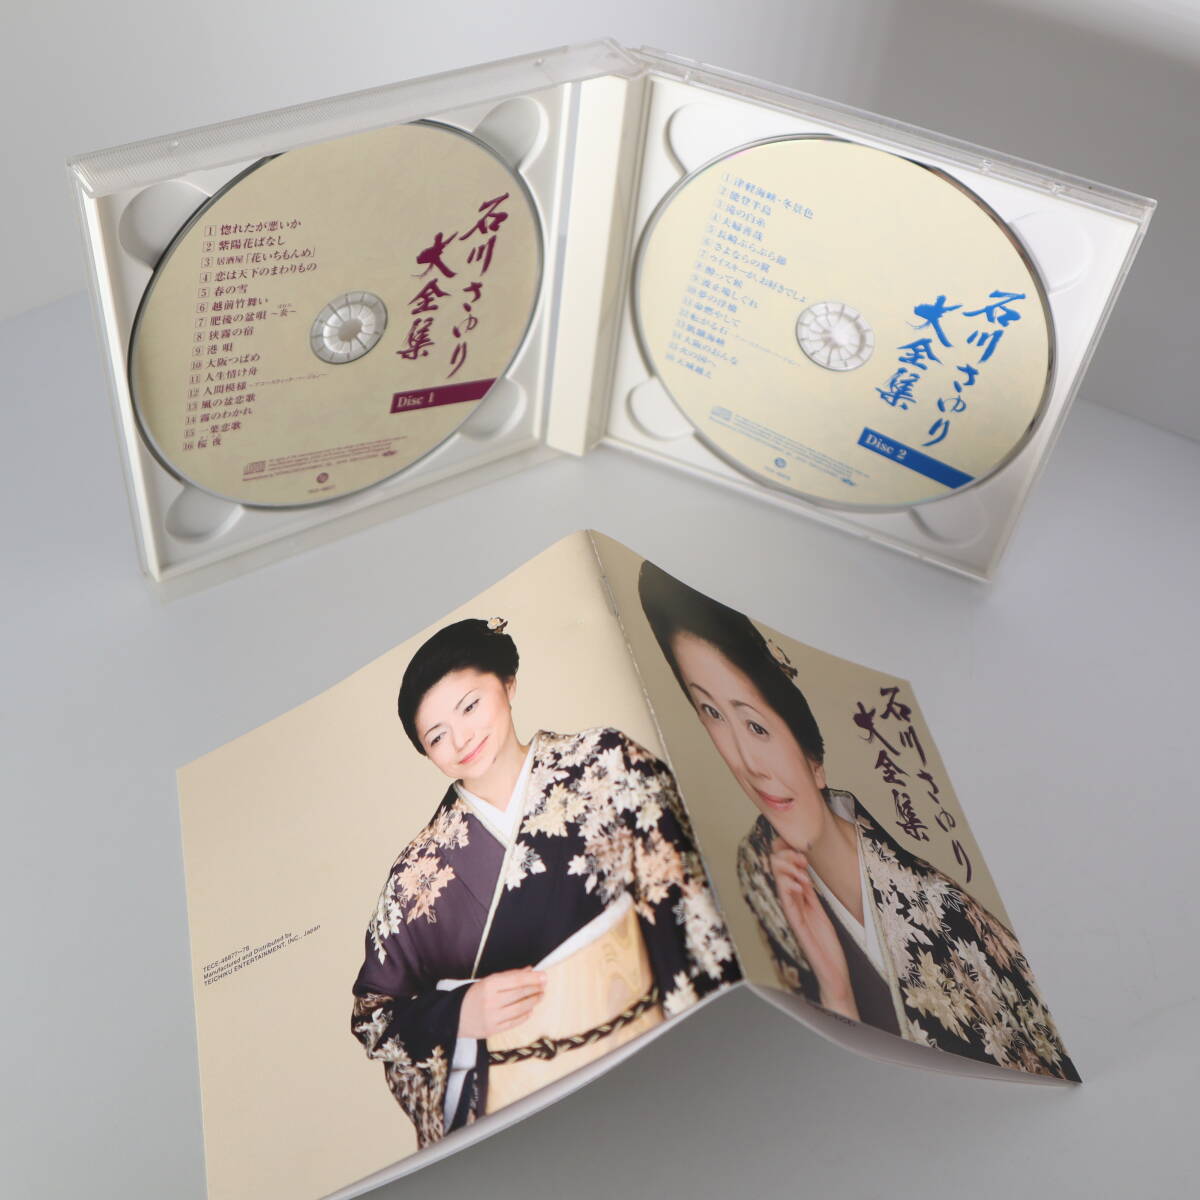  Ishikawa ...CD 2 шт. комплект ( утро цветок TECA-12107* Ishikawa ... большой полное собрание сочинений 2 листов комплект TECA-48877~8 ) с поясом оби 